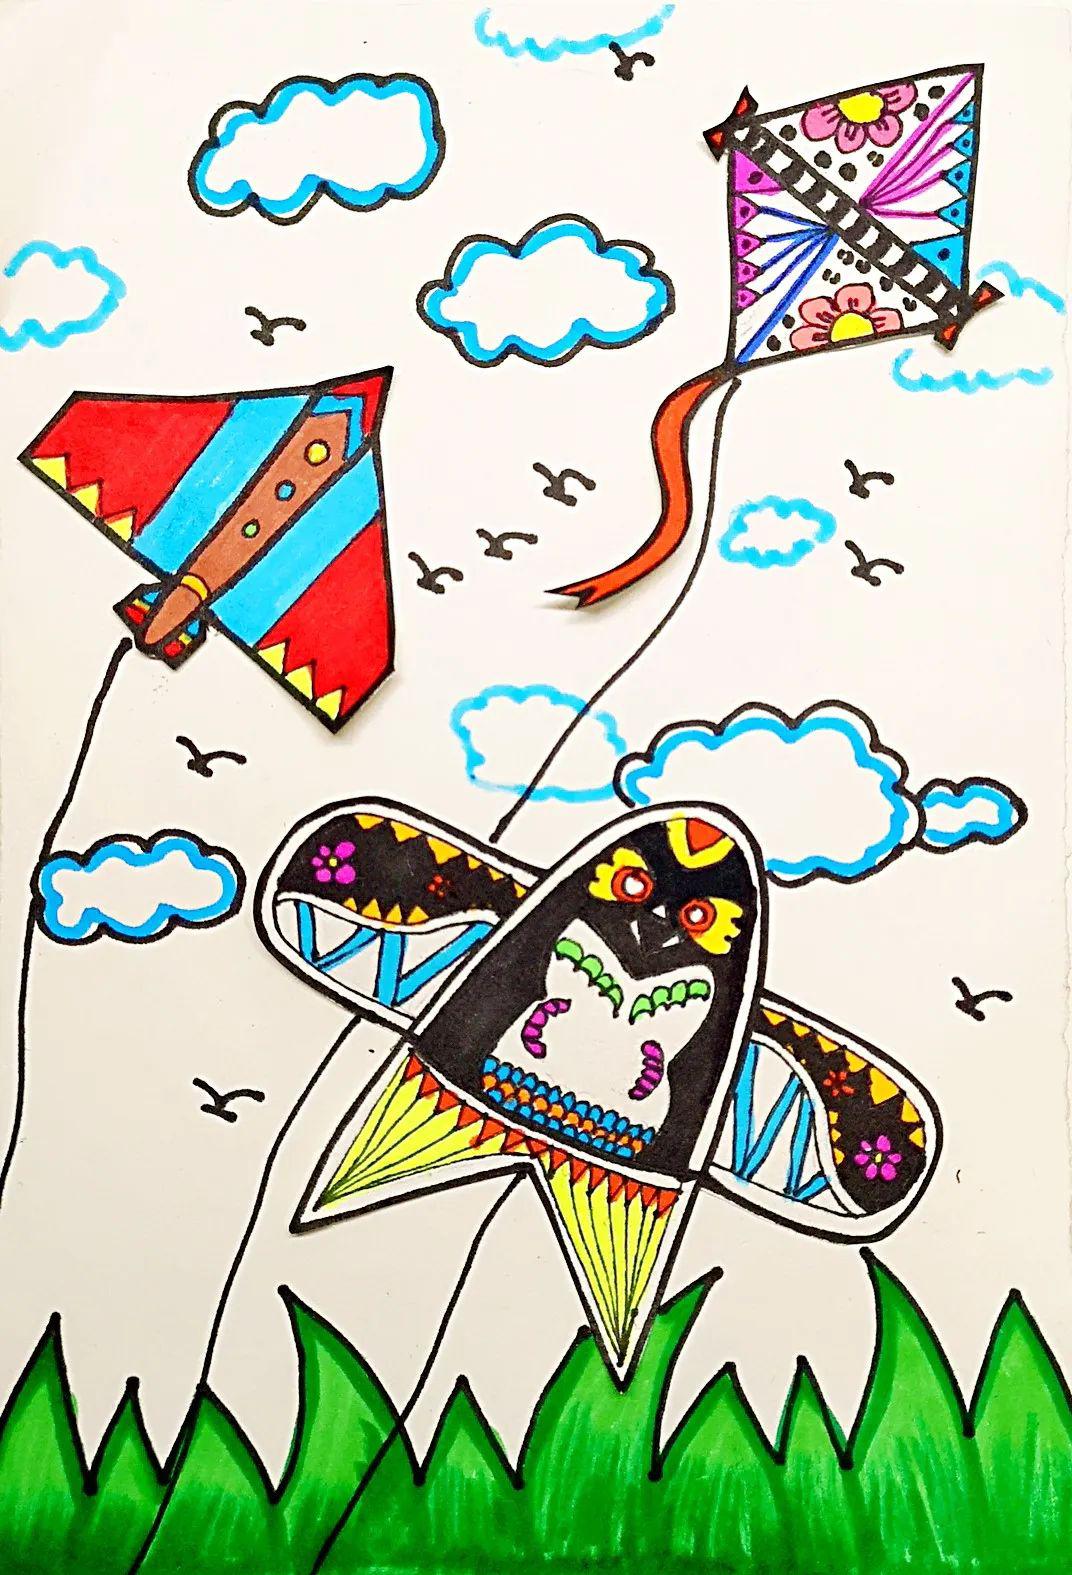 diy风筝 空白风筝儿童教学风筝材料涂鸦填色手绘绘画风筝-阿里巴巴